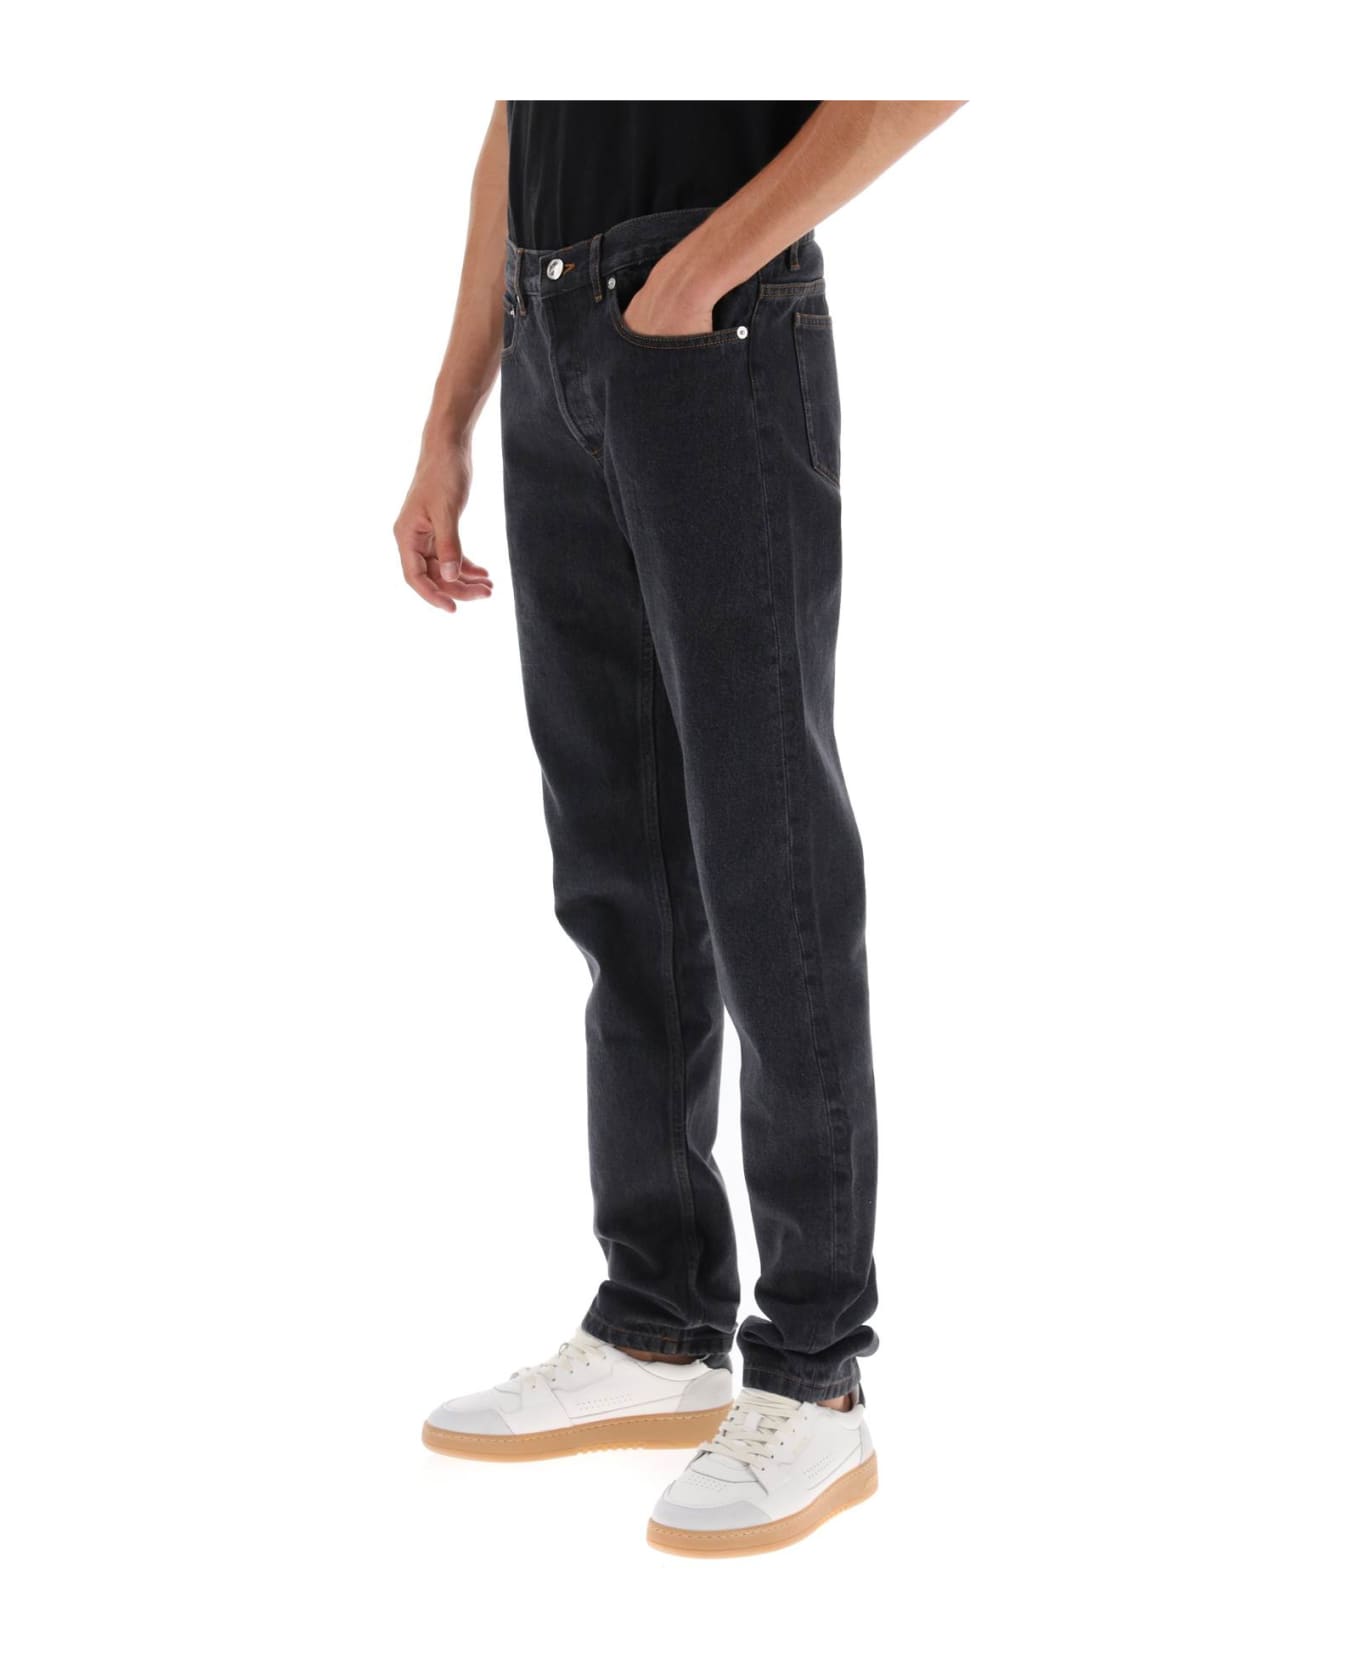 A.P.C. Petit New Standard Jeans - NOIR DELAVE (Black)